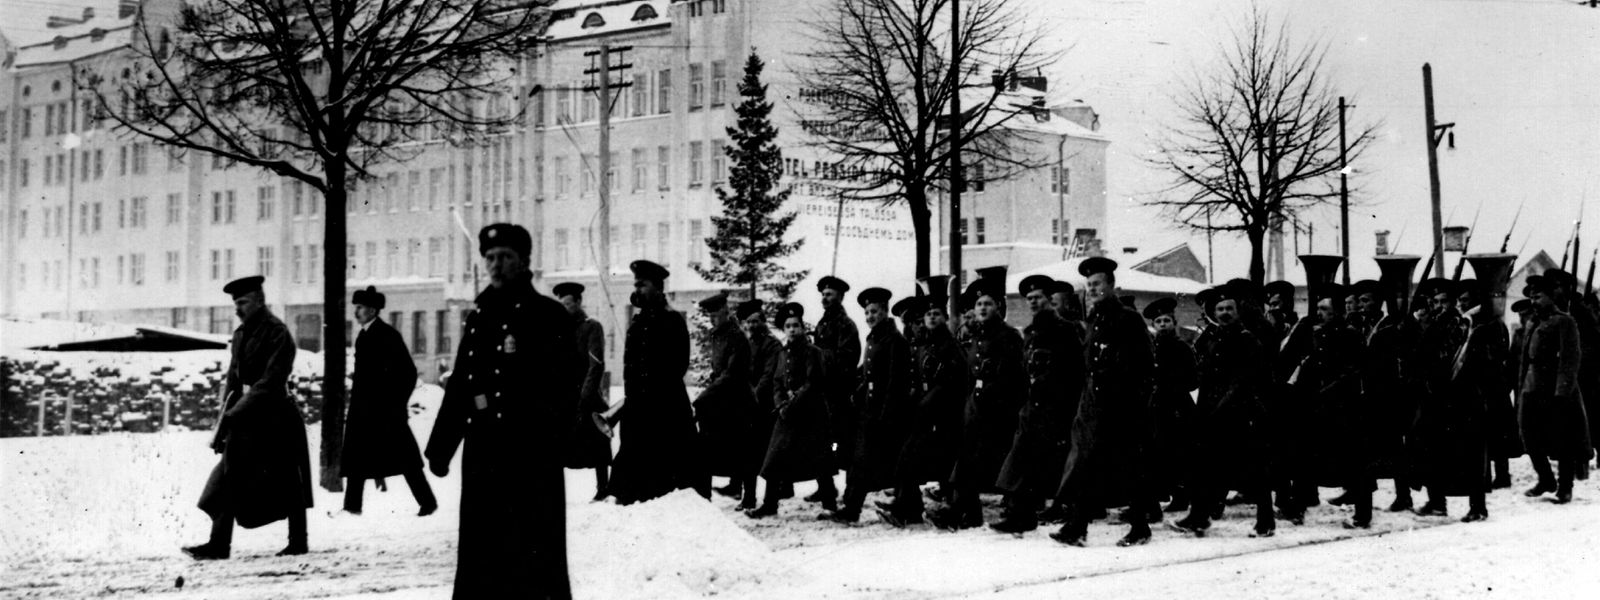 Truppen der Roten Armee marschieren im November 1939 in das benachbarte Finnland ein. Doch die Invasion verläuft nicht nach Plan – ähnlich wie heute in der Ukraine. 